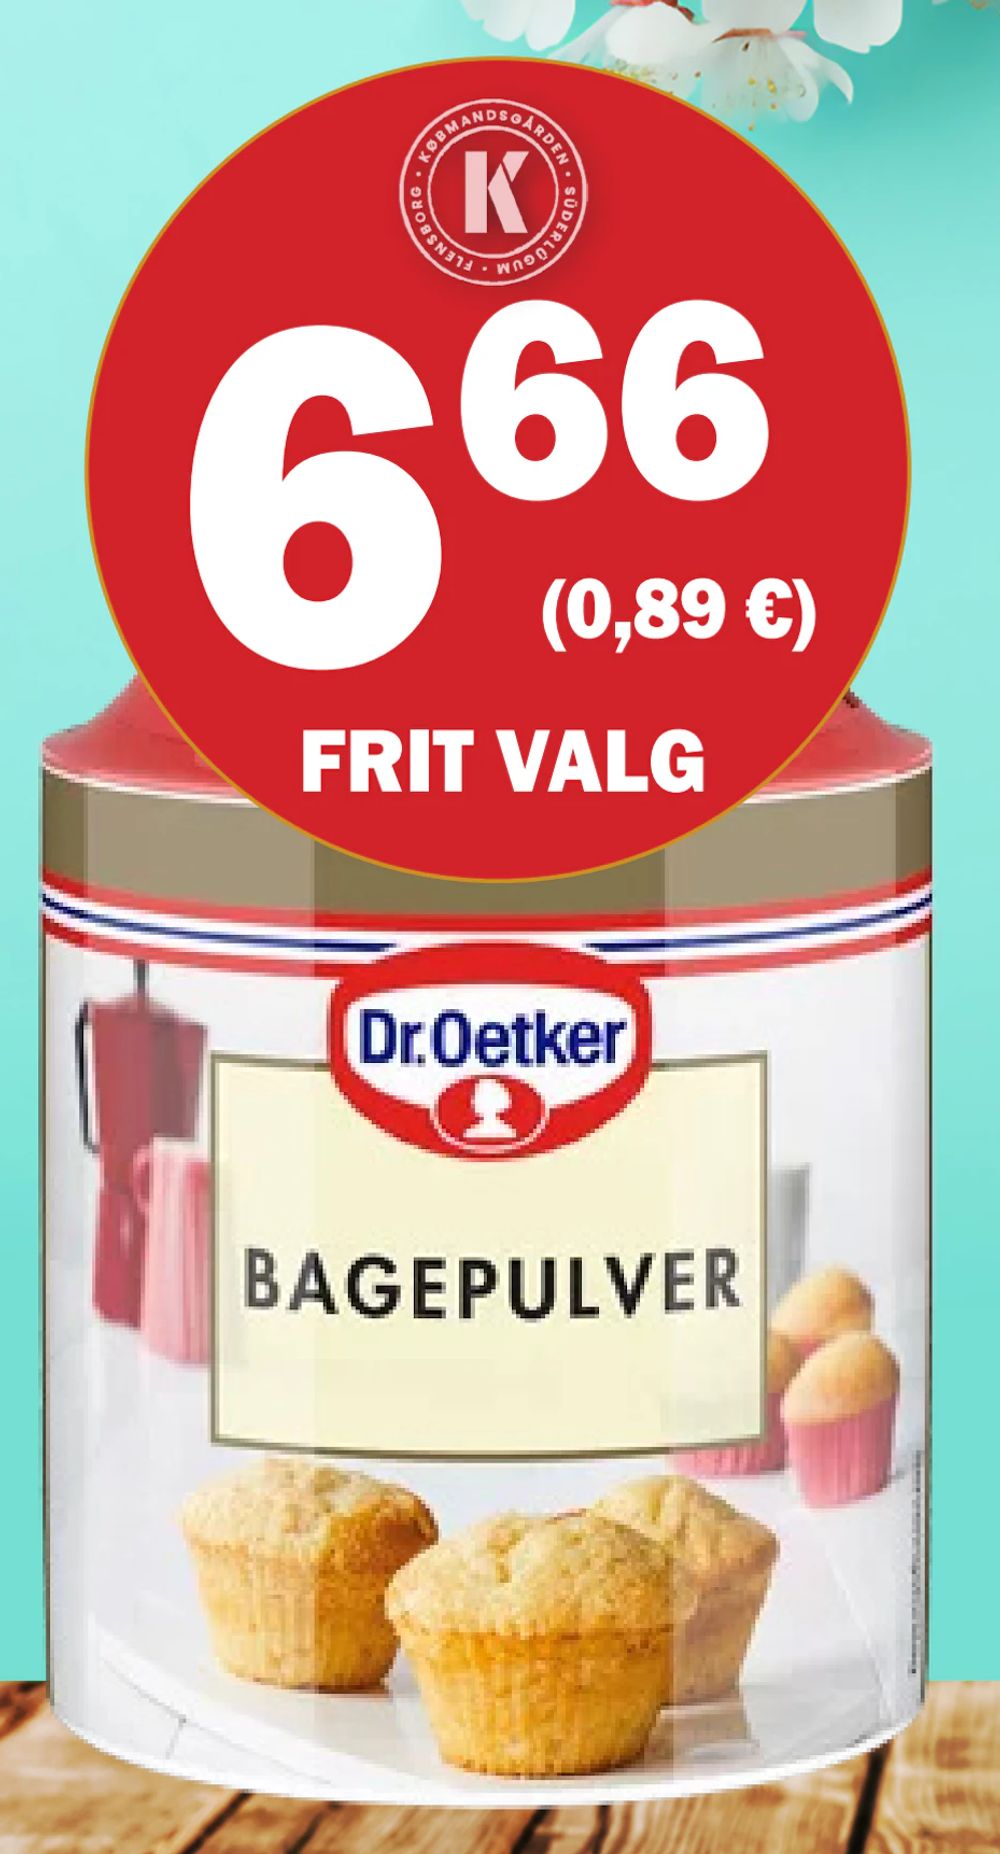 Tilbud på Dr. Oetker Bagepulver fra Købmandsgården til 6,66 kr.